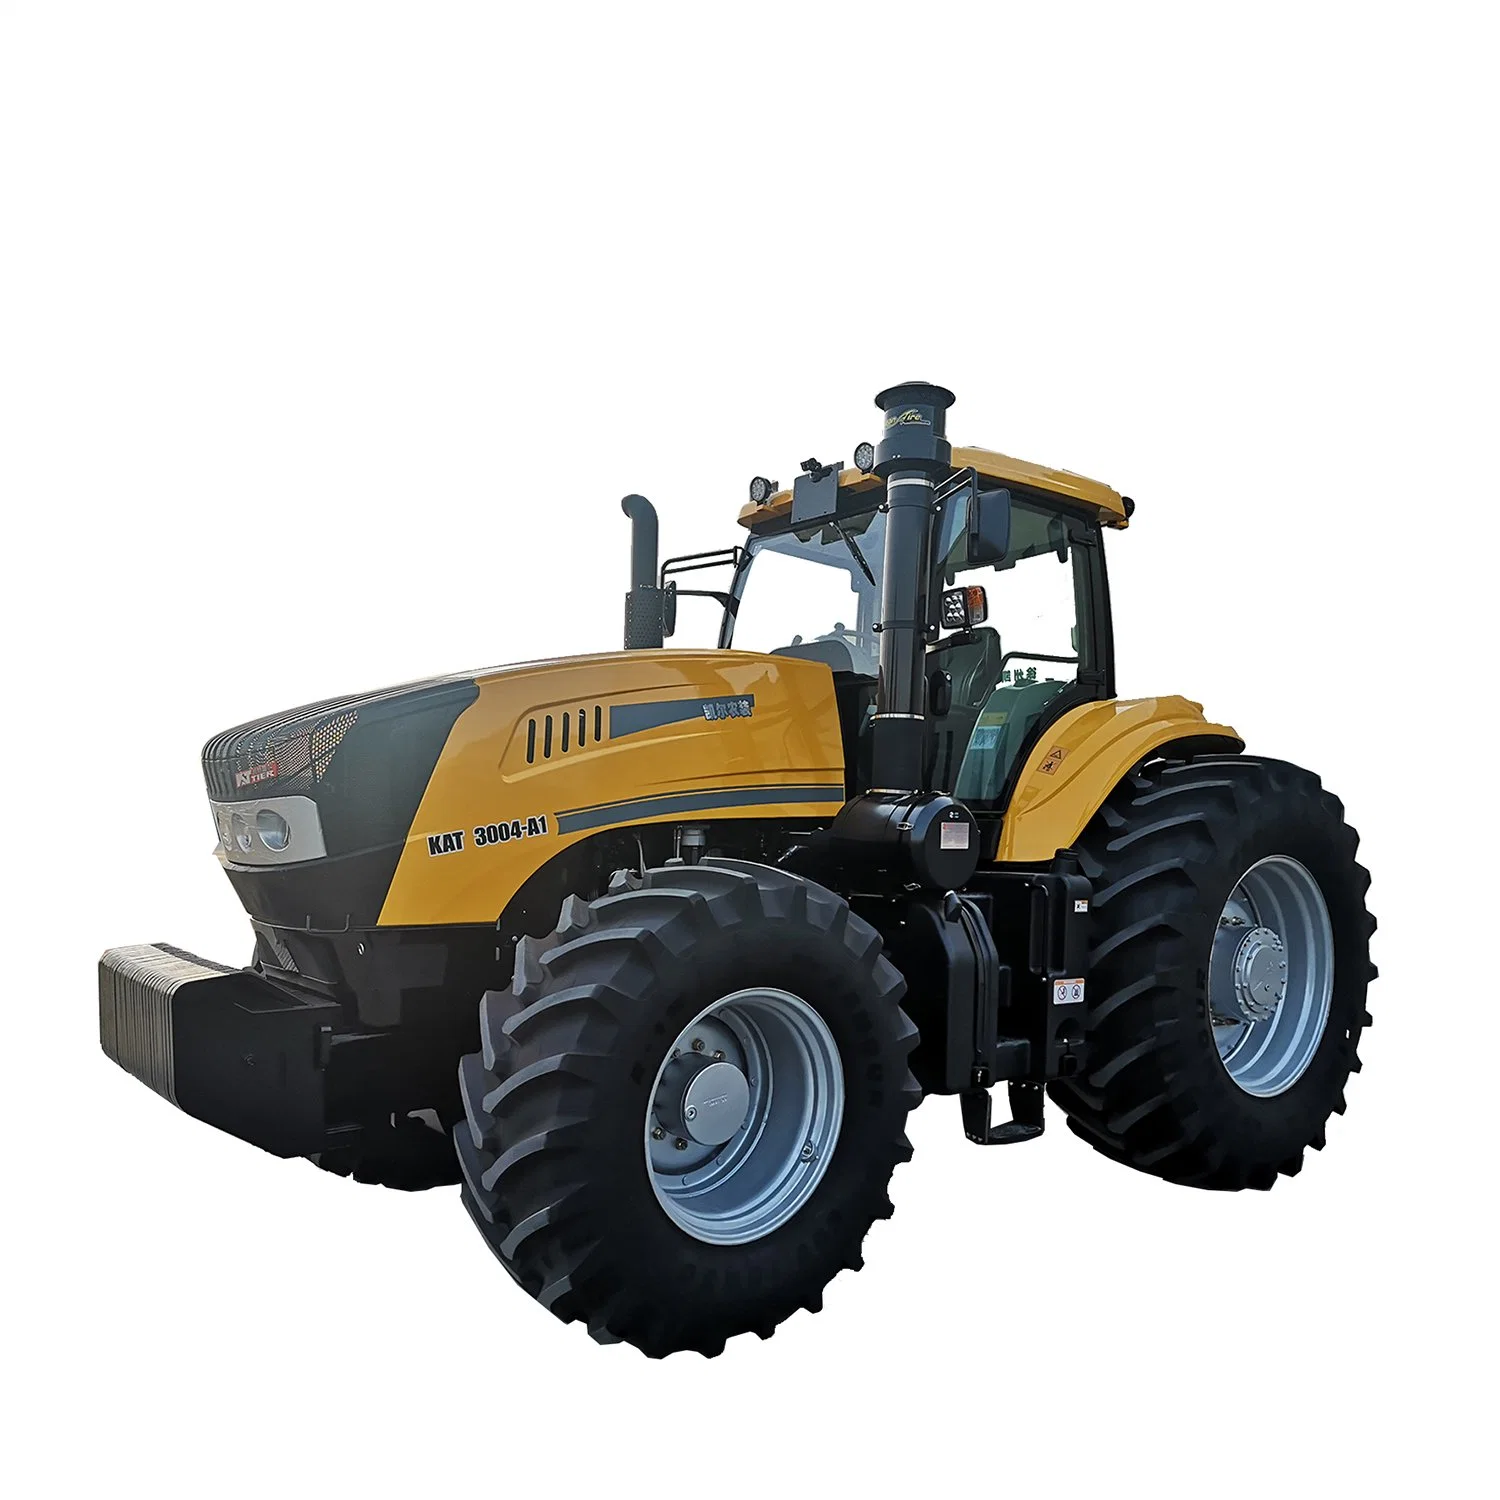 Комри3004-A1 крупных китайских тракторов 300HP сельскохозяйственного оборудования тракторы